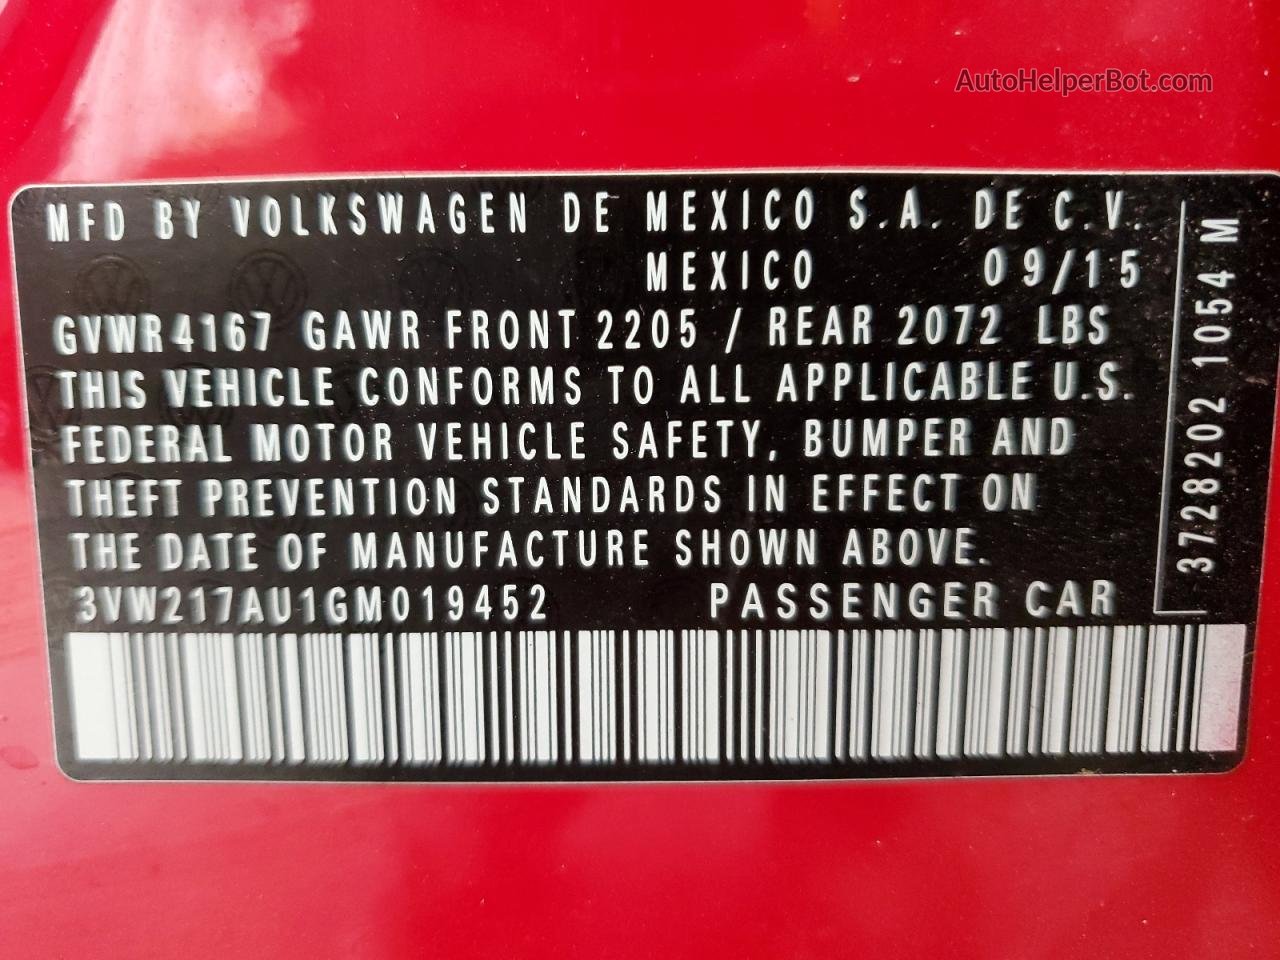 2016 Volkswagen Golf S/se Red vin: 3VW217AU1GM019452